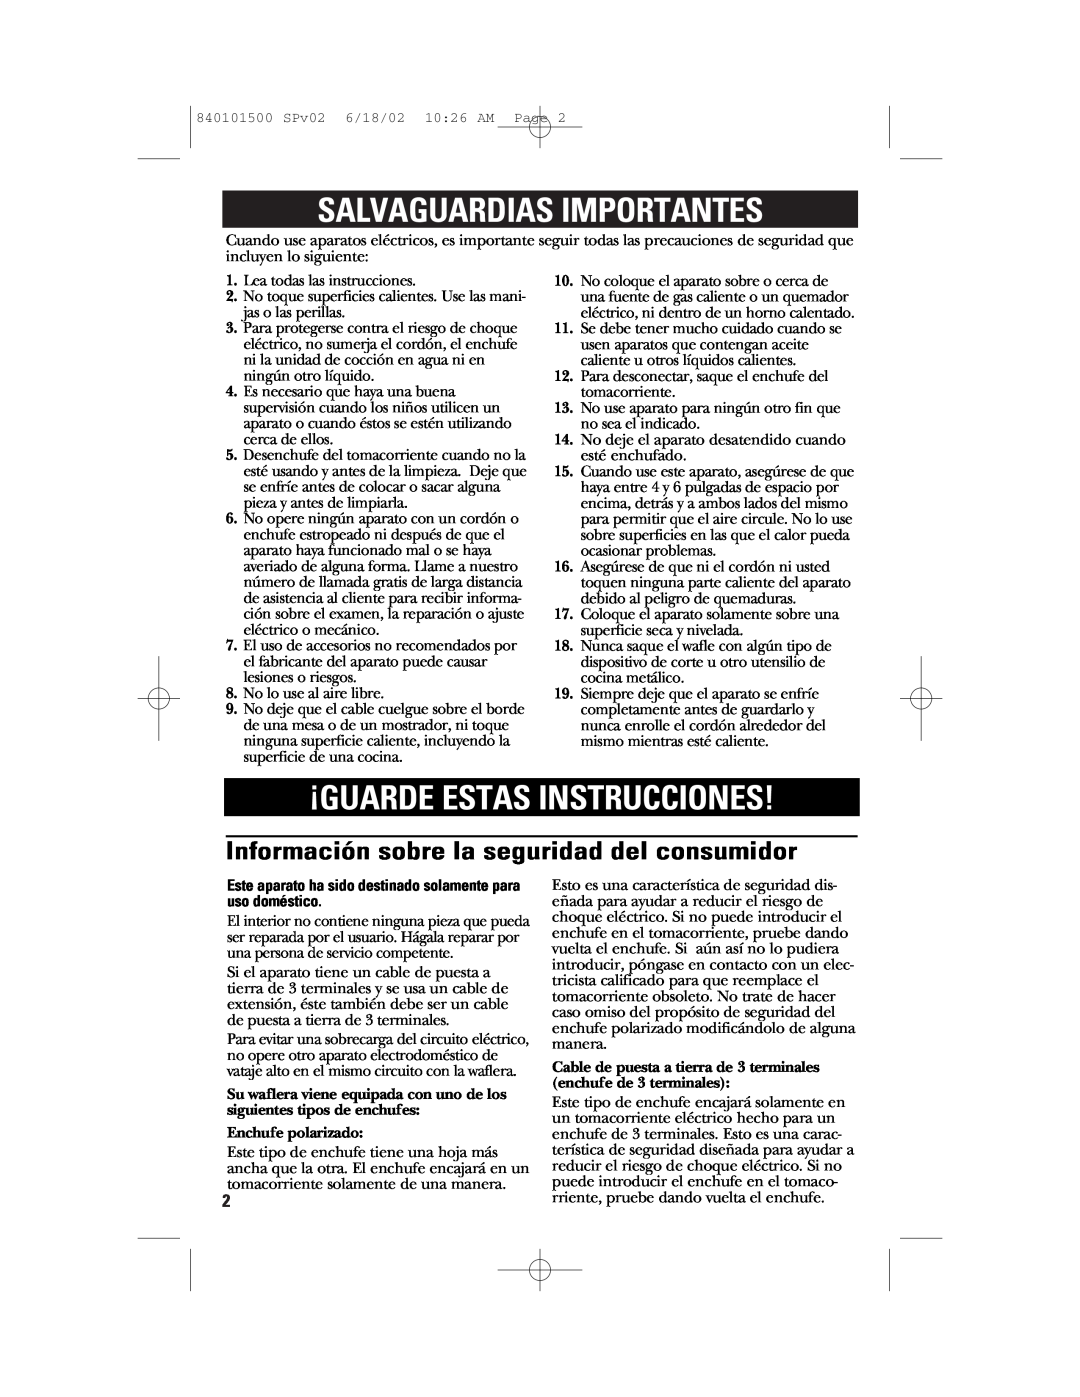 GE 840101500 manual Salvaguardias Importantes, ¡Guarde Estas Instrucciones, Información sobre la seguridad del consumidor 